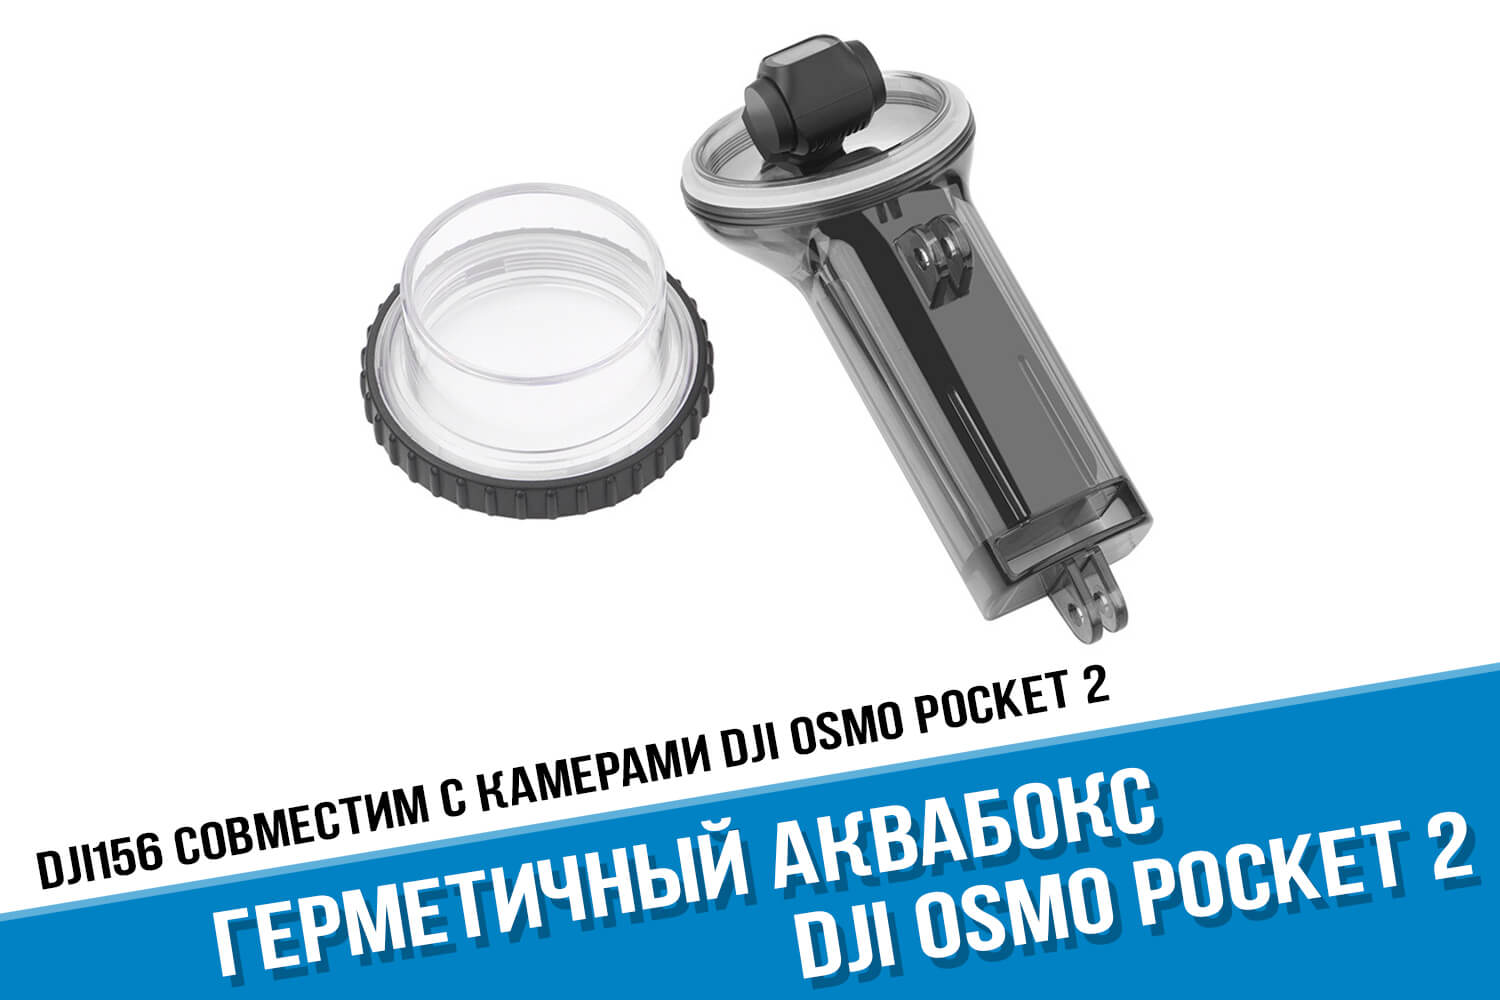 Аквабокс камеры DJI Osmo Pocket 2